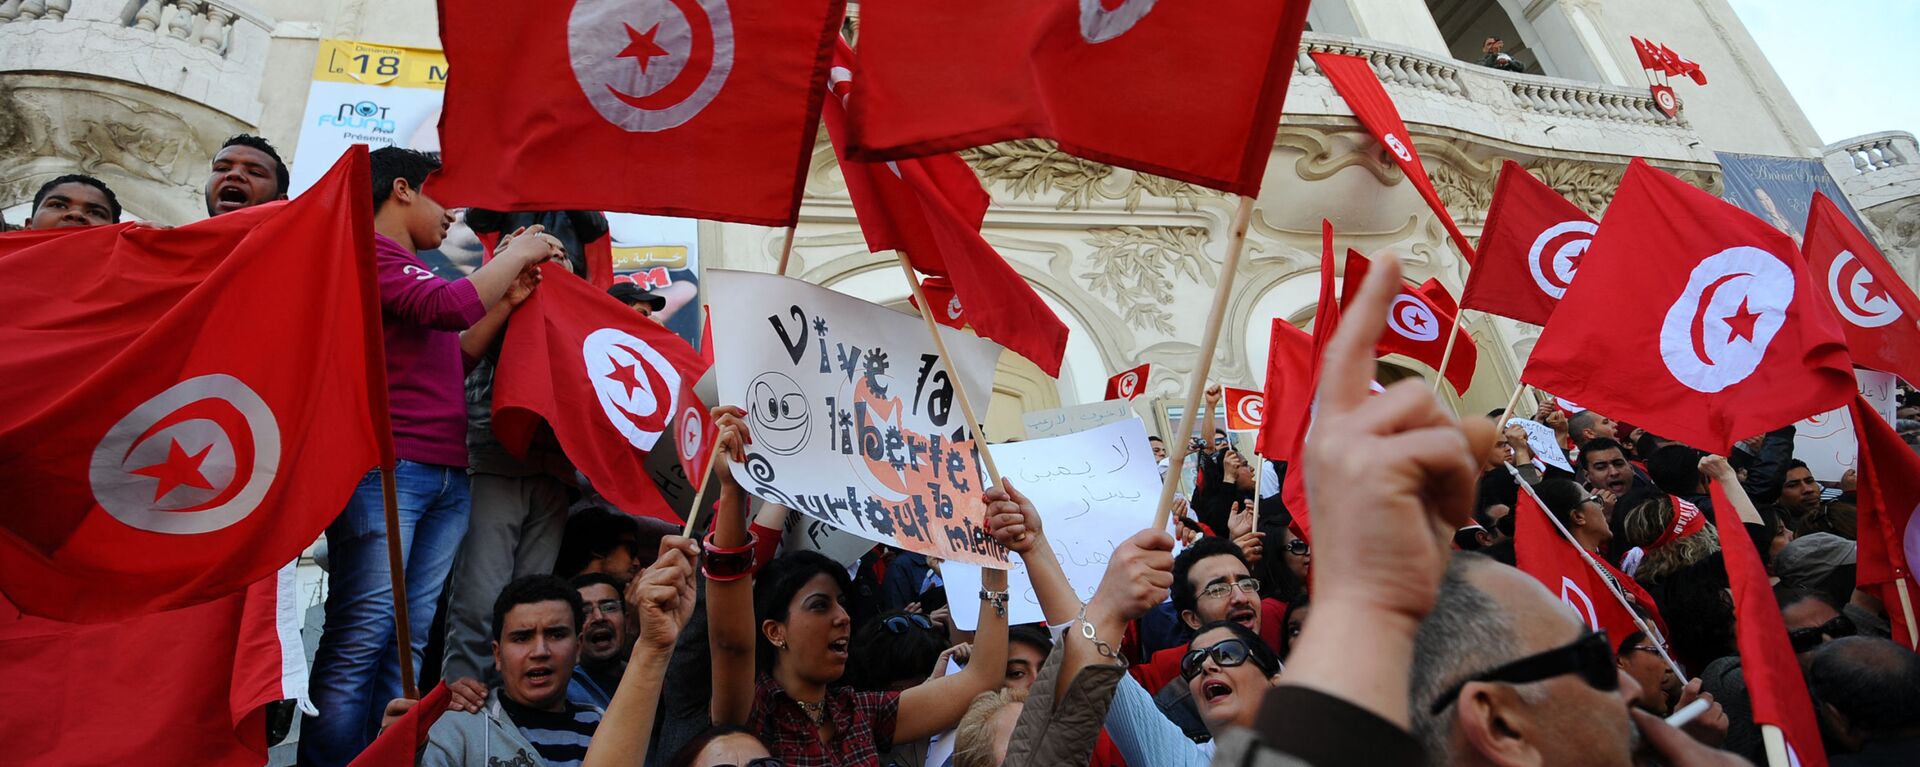 Des Tunisiens brandissent des drapeaux du pays lors d'une manifestation à Tunis (archives) - Sputnik Afrique, 1920, 25.03.2021